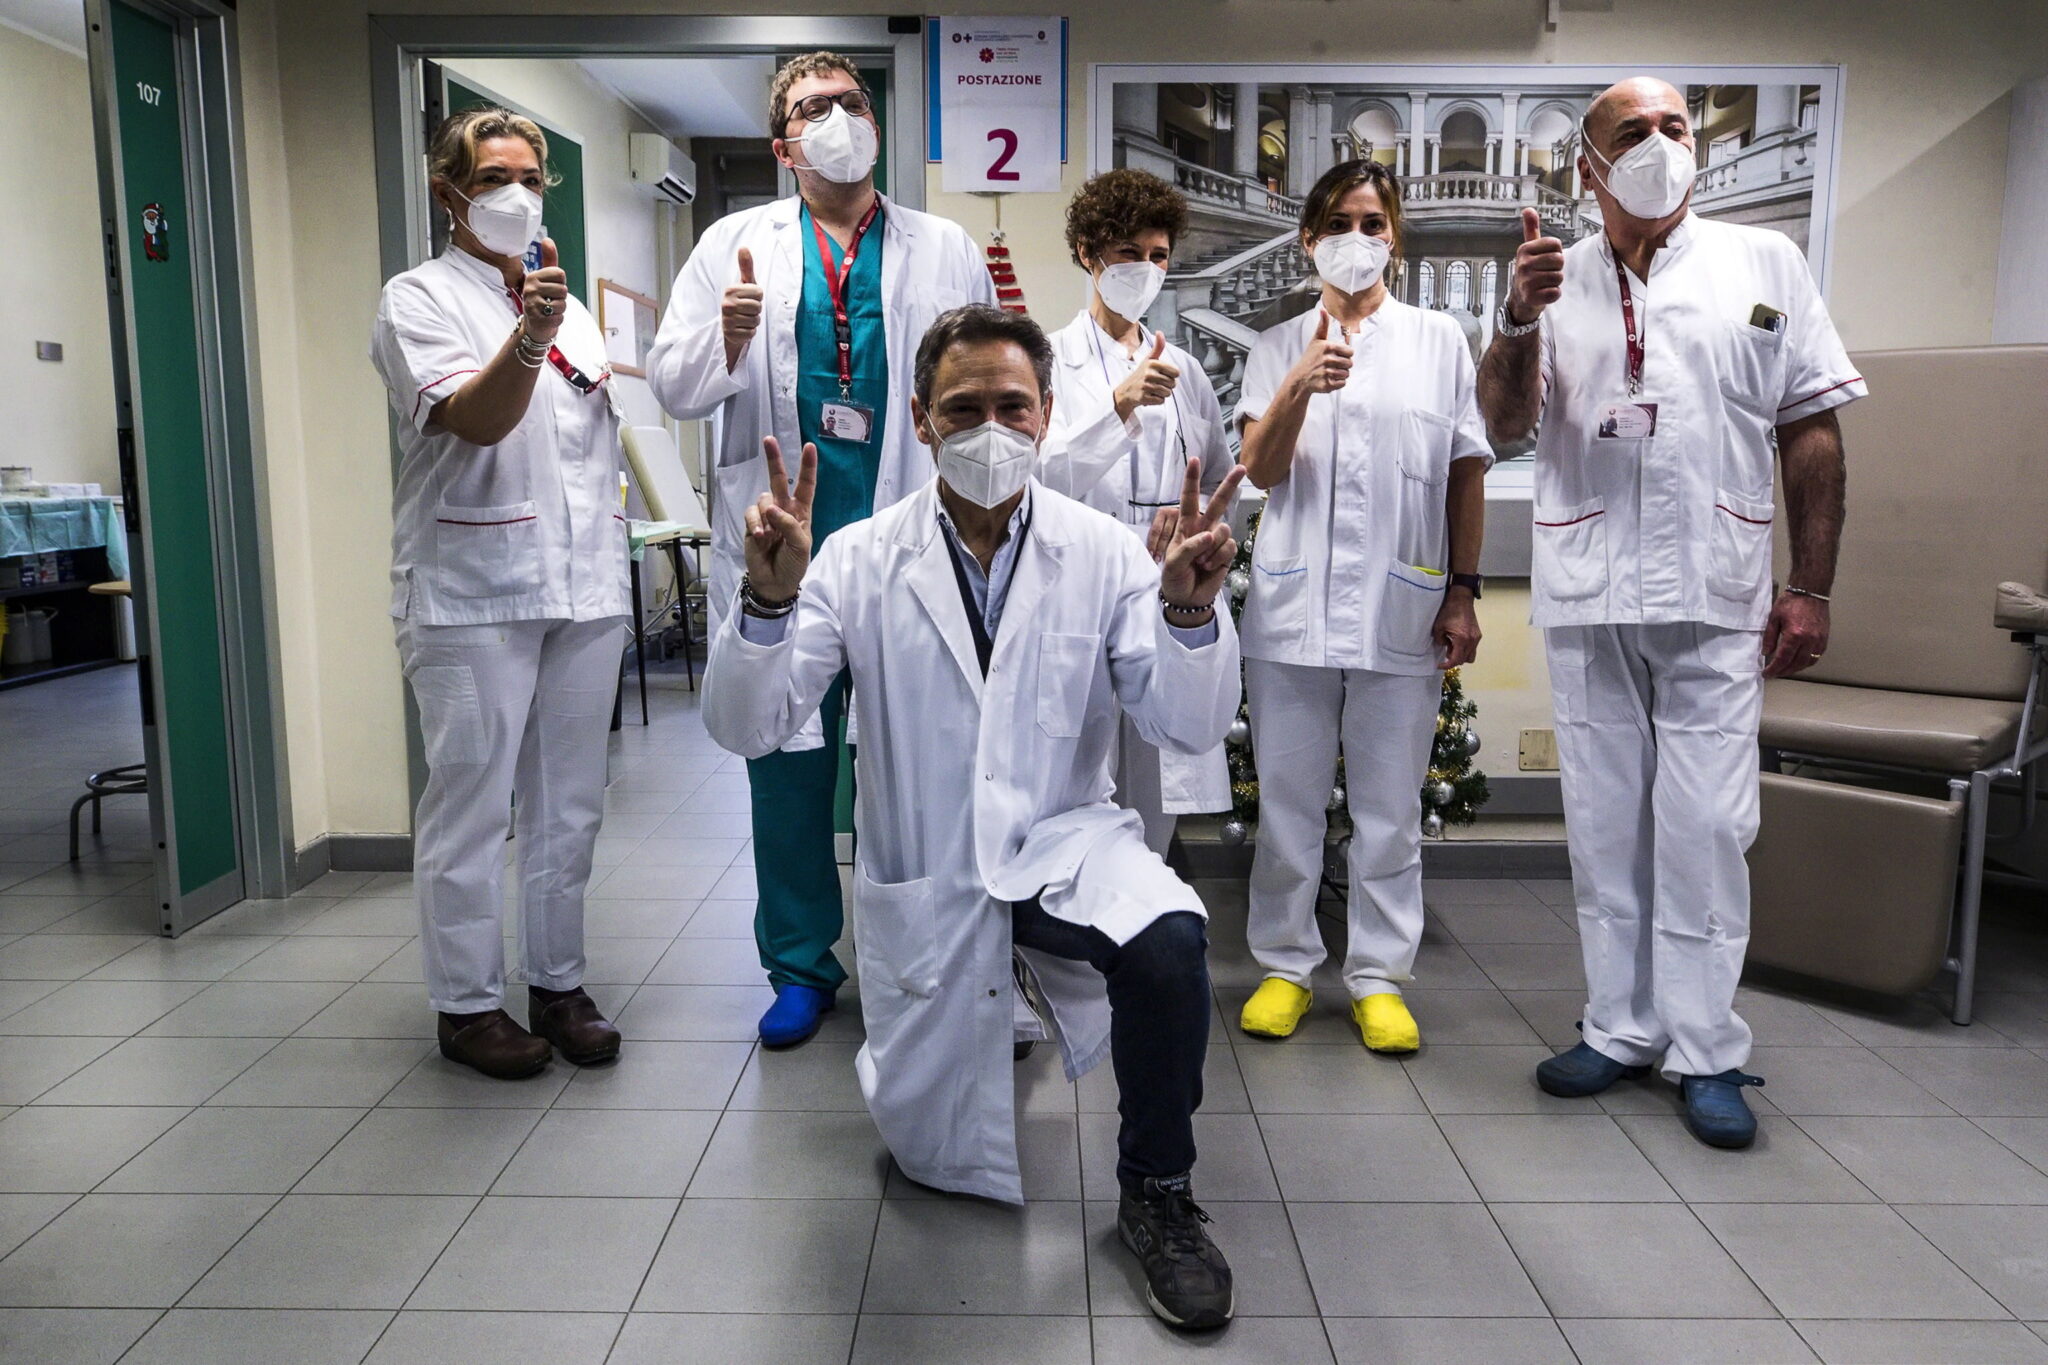  Szpital w Rzymie i pierwsza grupa medyków zaszczepionych przeciwko COVID-19, fot. EPA / ANGELO CARCONI 